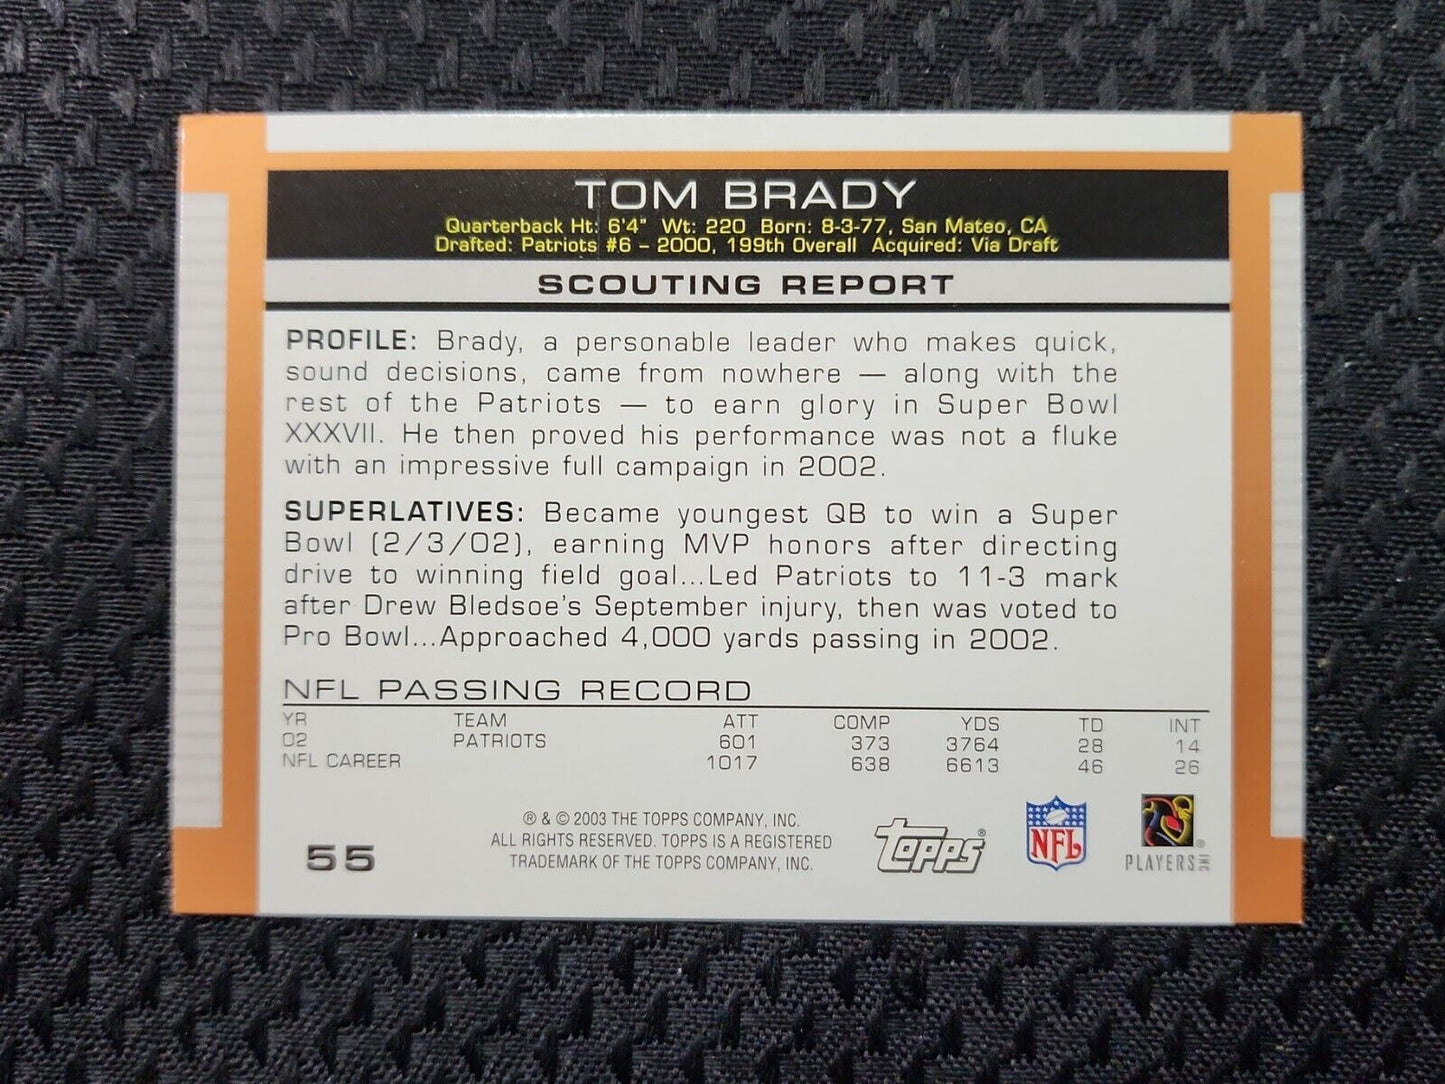 2003 Topps Tom Brady Card #55 New England Patriots